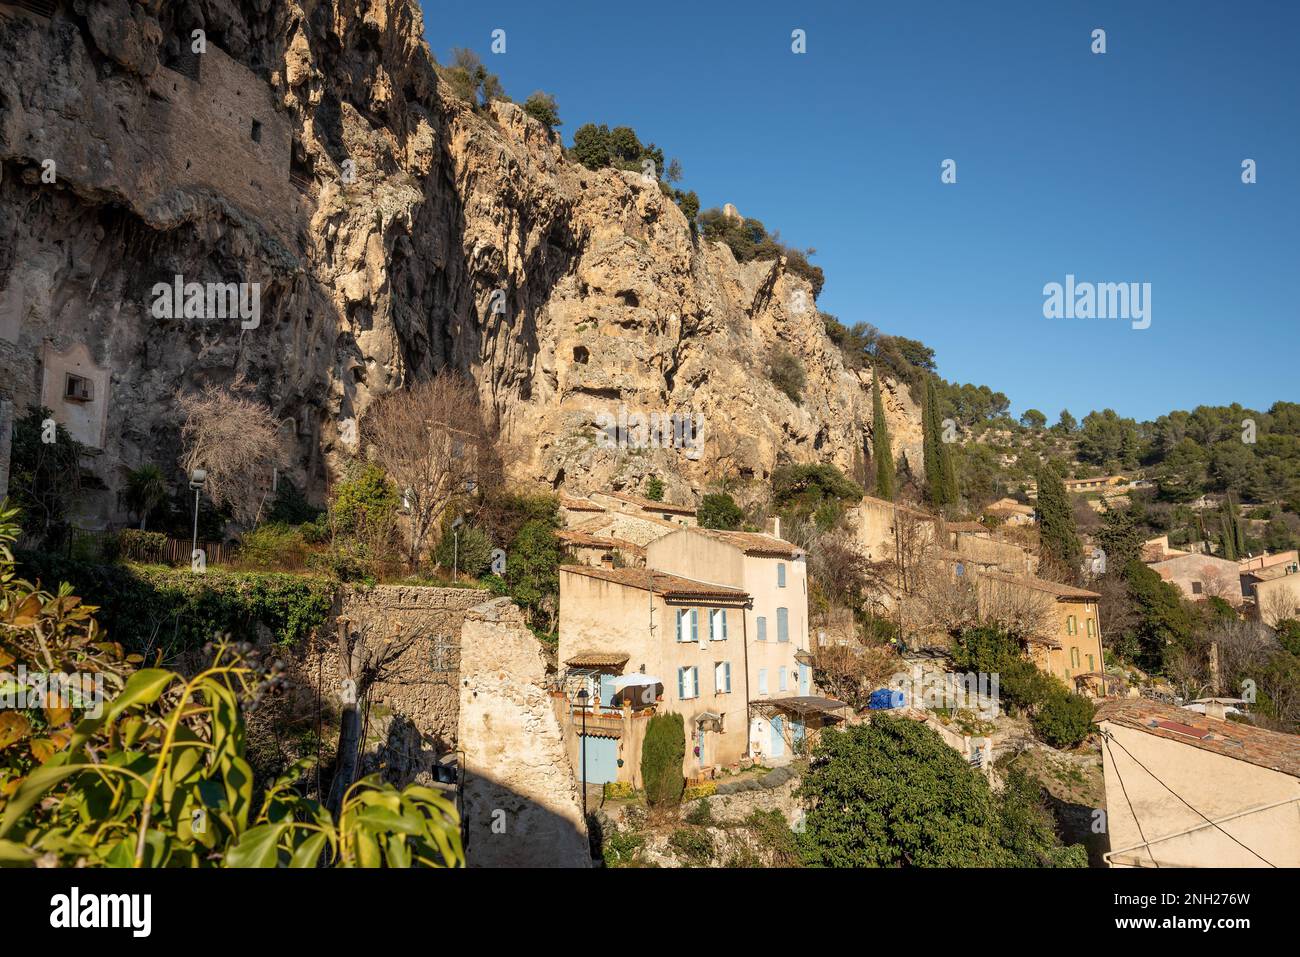 Cotignac ist ein französisches Dorf im Departement Var der Region Provence-Alpes-Côte d'Azur. Es ist berühmt für seine troglodytären Wohnungen, die geschnitzt sind Stockfoto